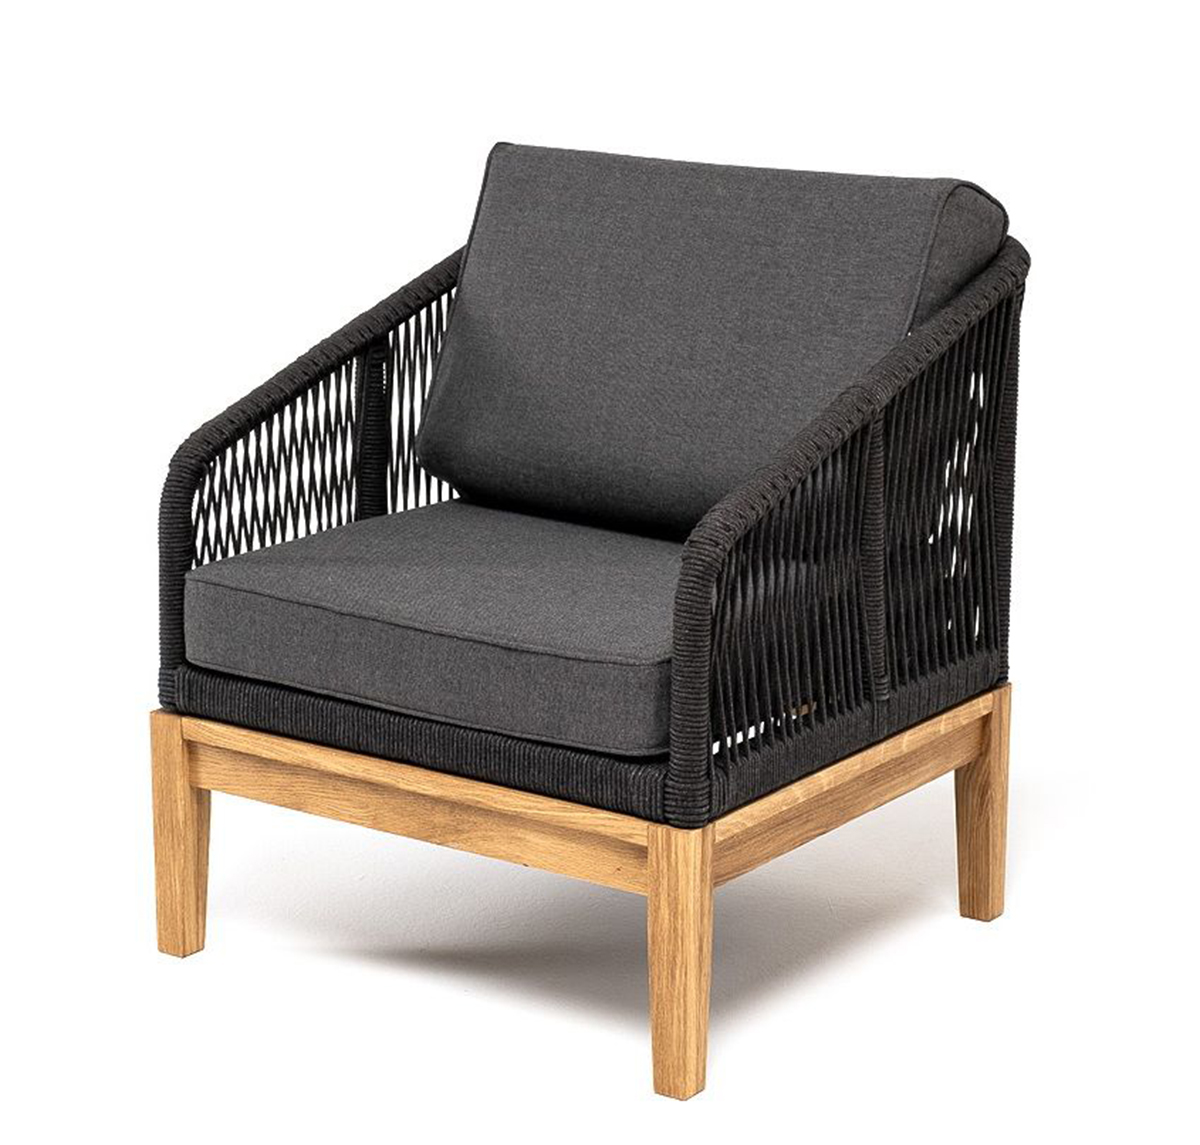 Кресло плетеное из роупа Канны дуб, темно-серое кресло плетеное из роупа канны темно серый ткань savana grafit